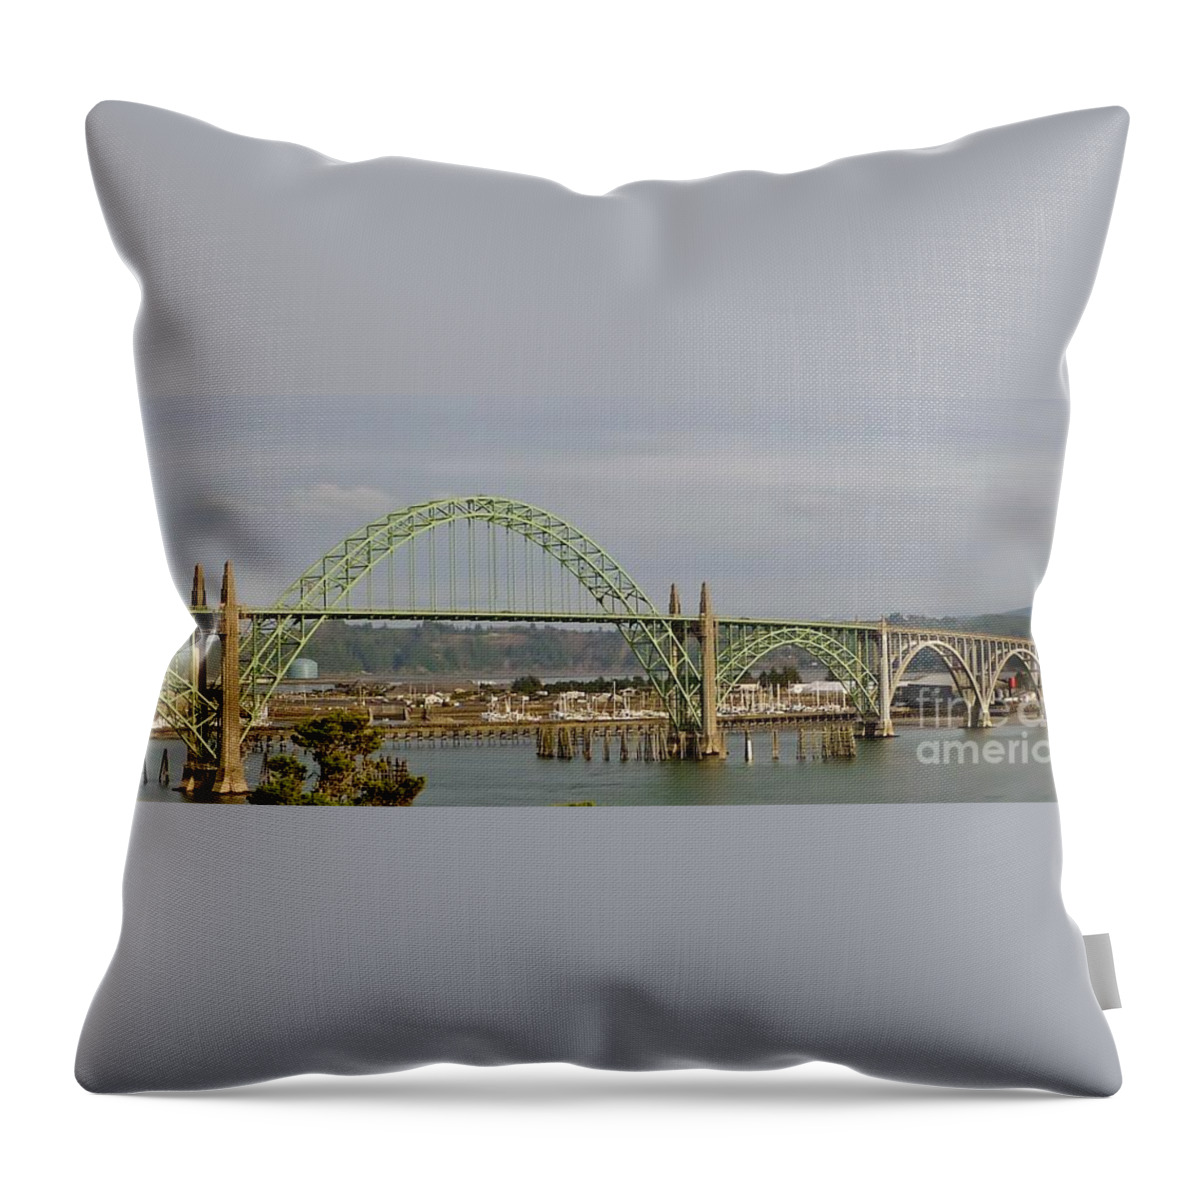 Waves Throw Pillow featuring the photograph Newport Bay Bridge by Susan Garren